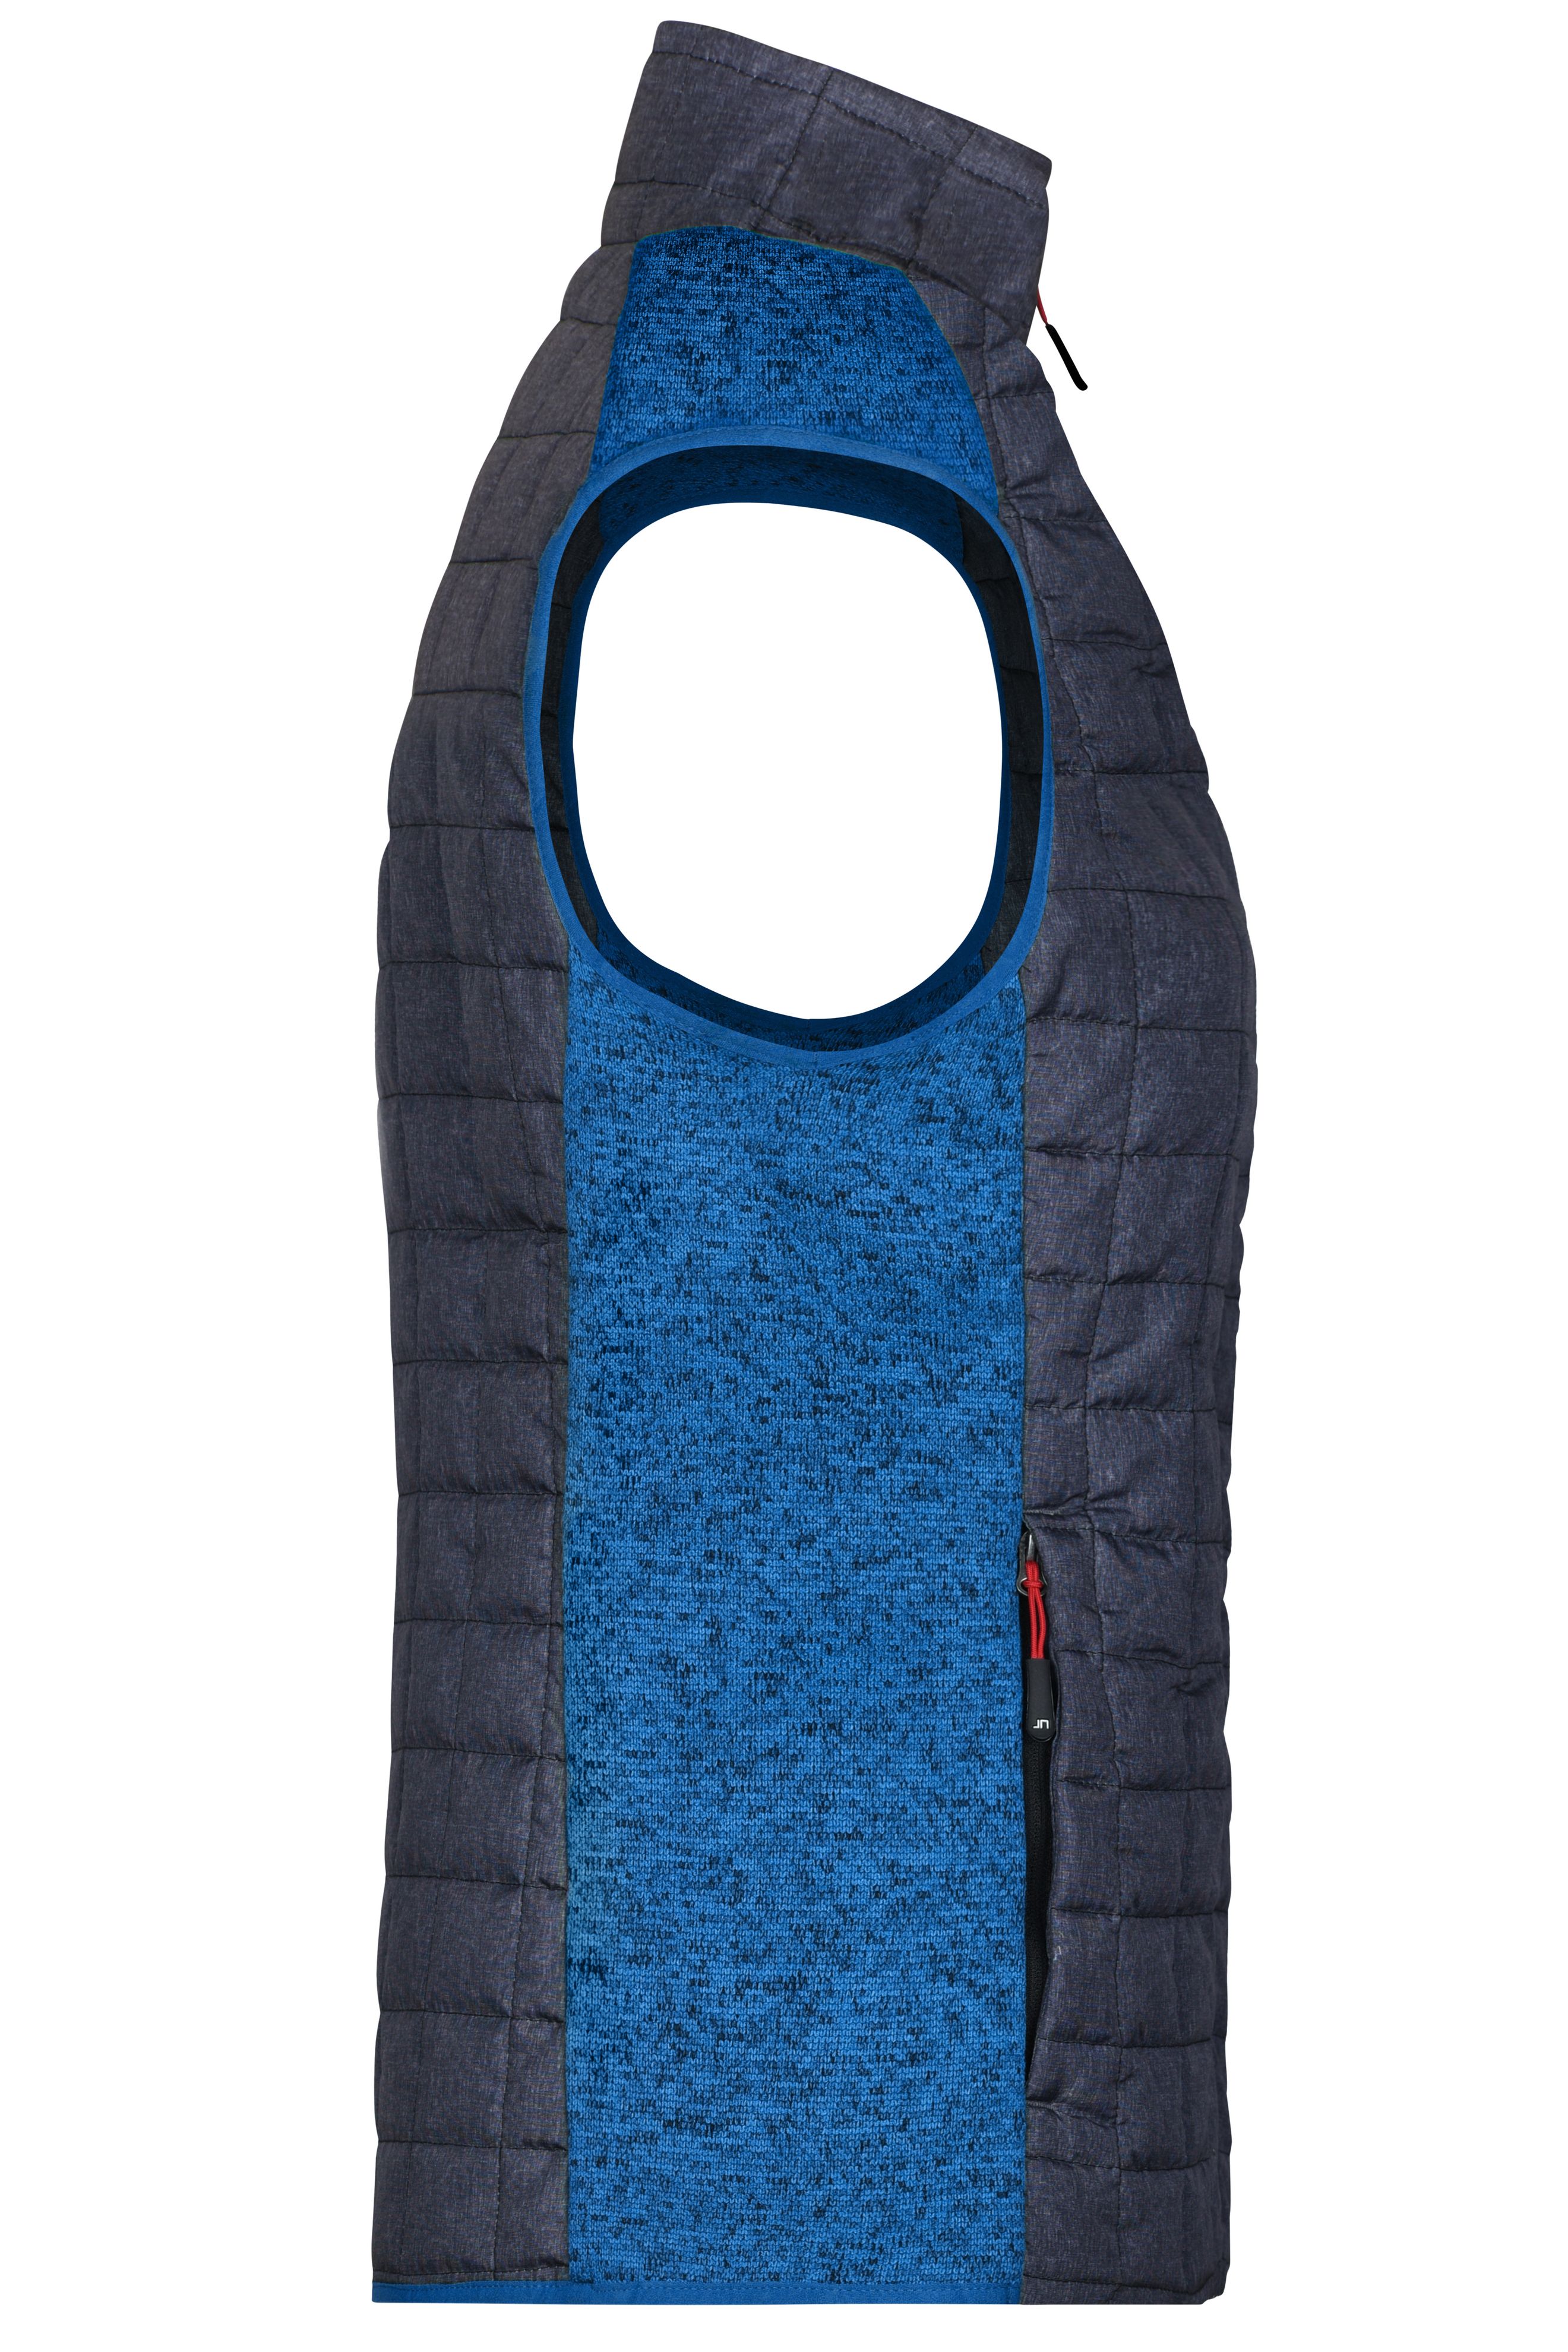 Ladies' Knitted Hybrid Vest JN739 Weste im stylischen Materialmix